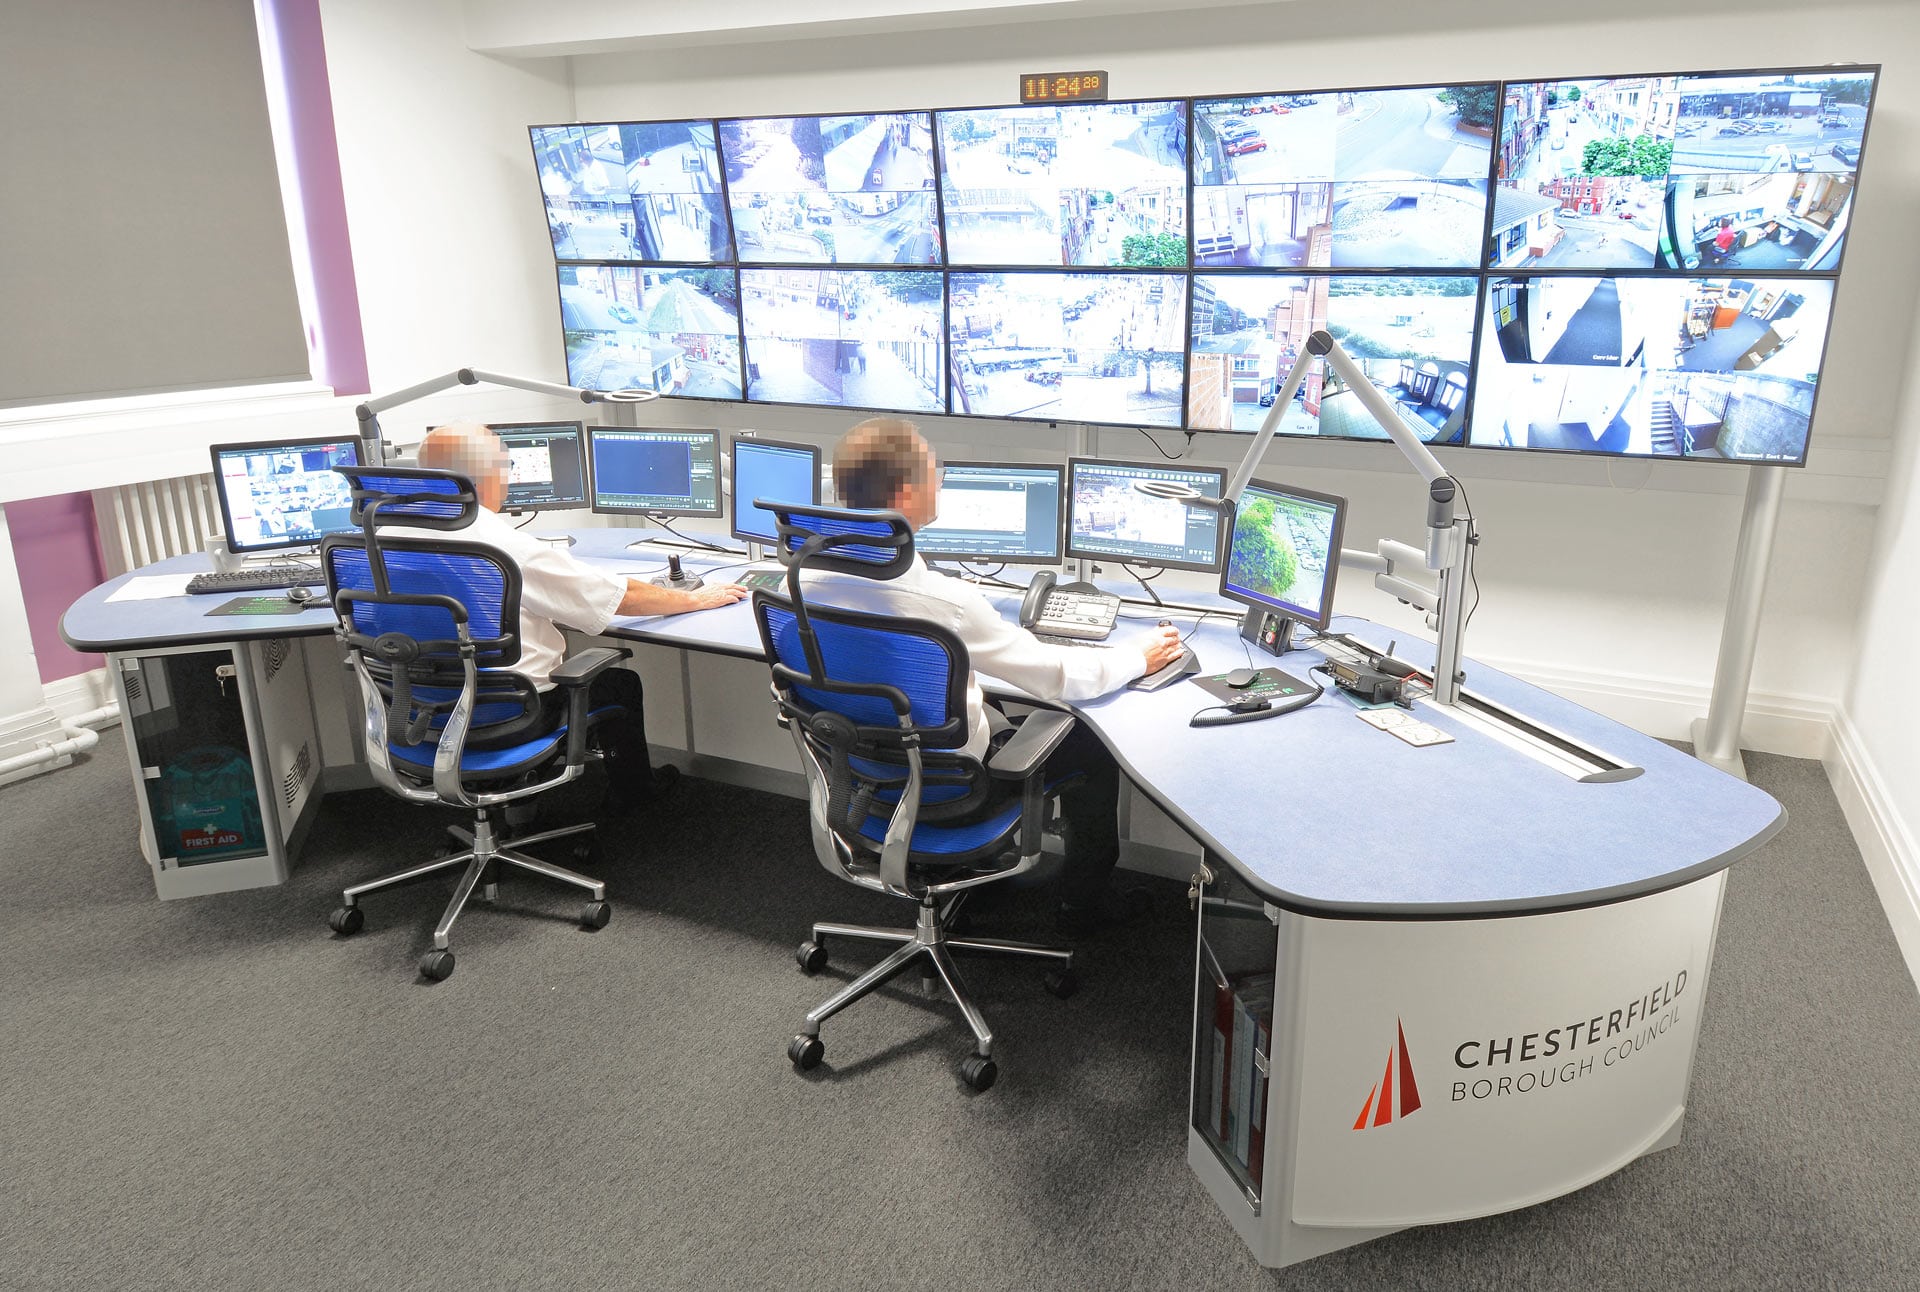 windows system control center deutsch